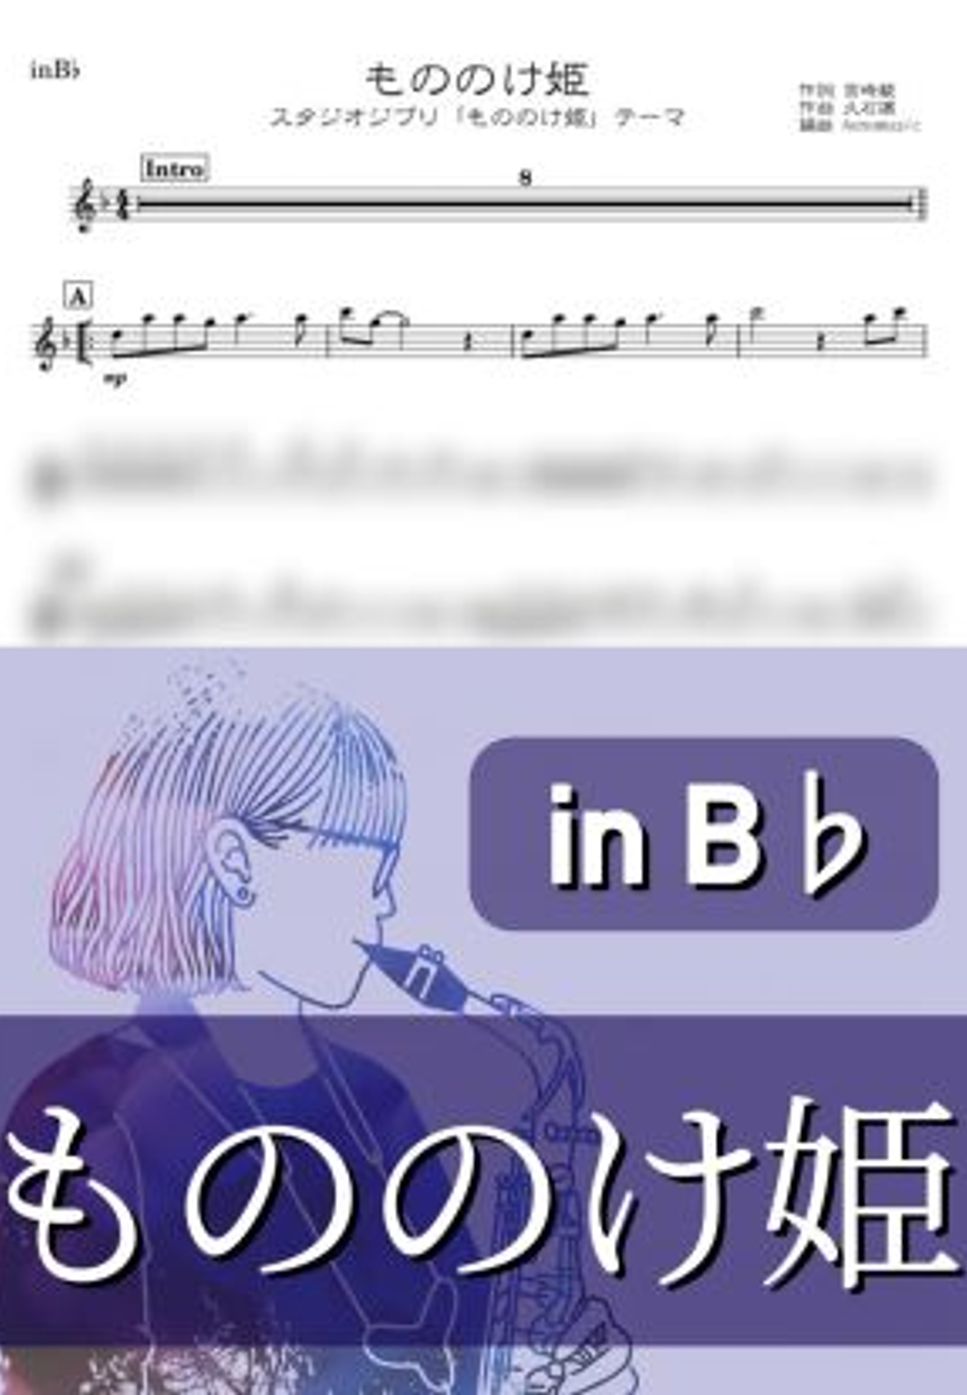 米良美一 - もののけ姫 (B♭) by kanamusic